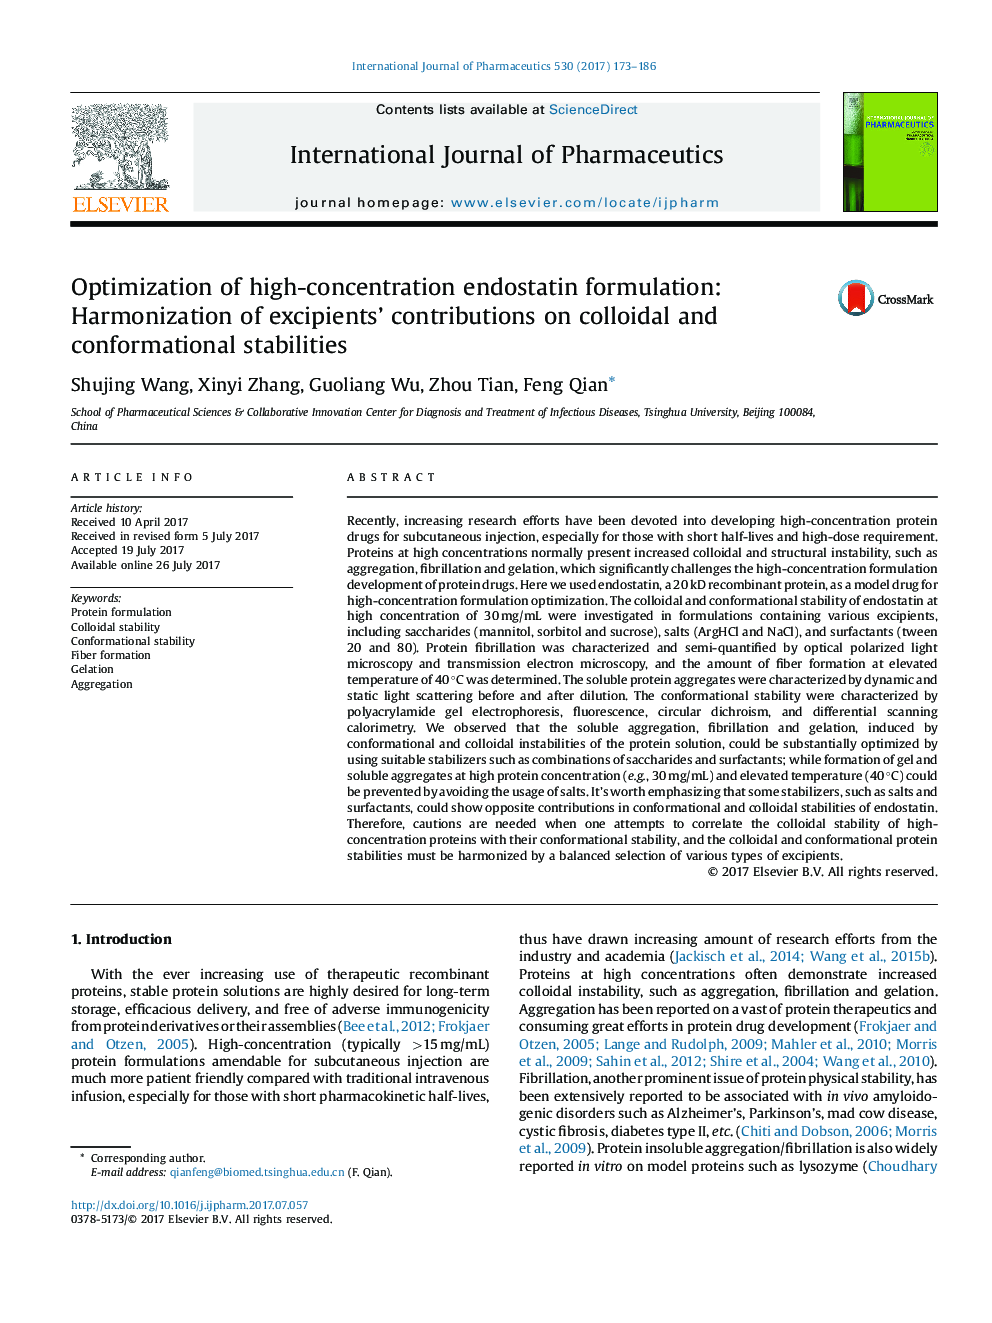 بهینه سازی فرمولاسیون انستاتین با غلظت بالا: هماهنگ سازی مشارکت امولسیون ها در استحکامات کلوئیدی و فشرده سازی 